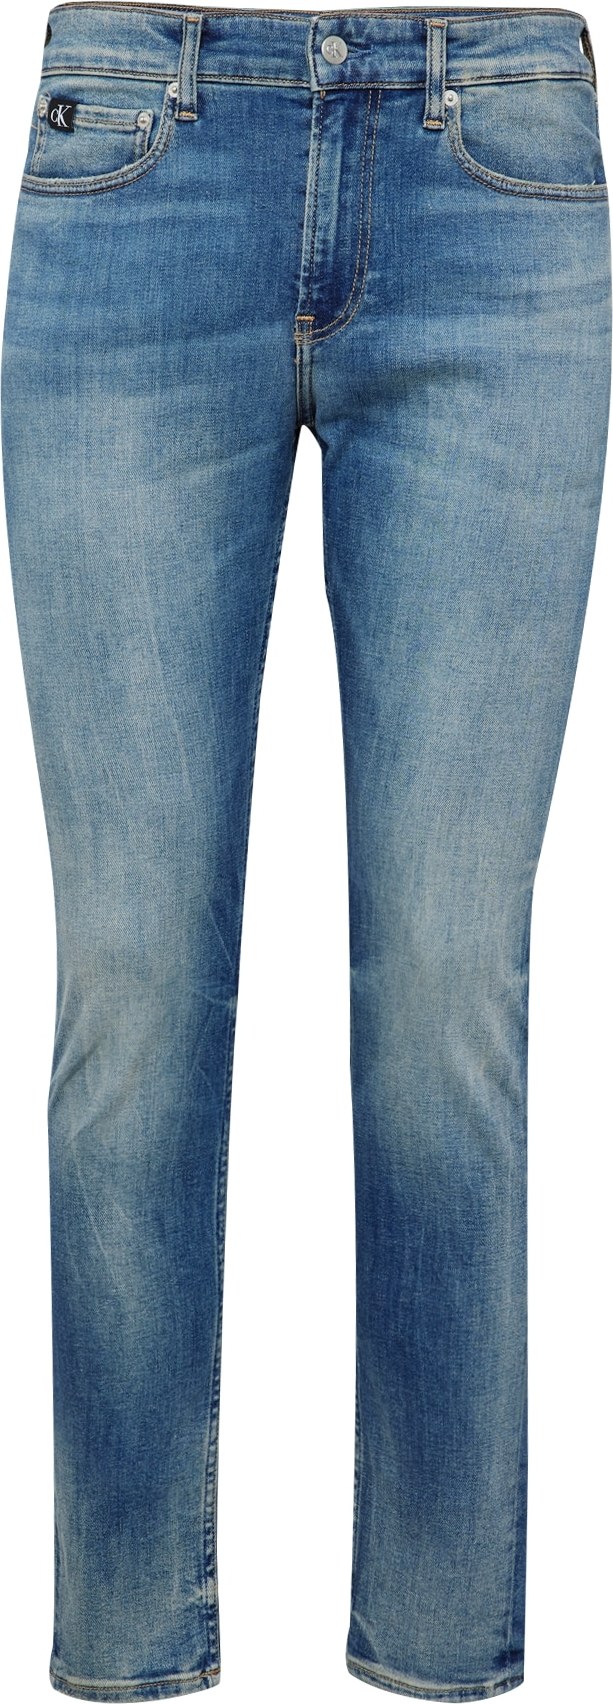 Calvin Klein Jeans Džíny modrá džínovina